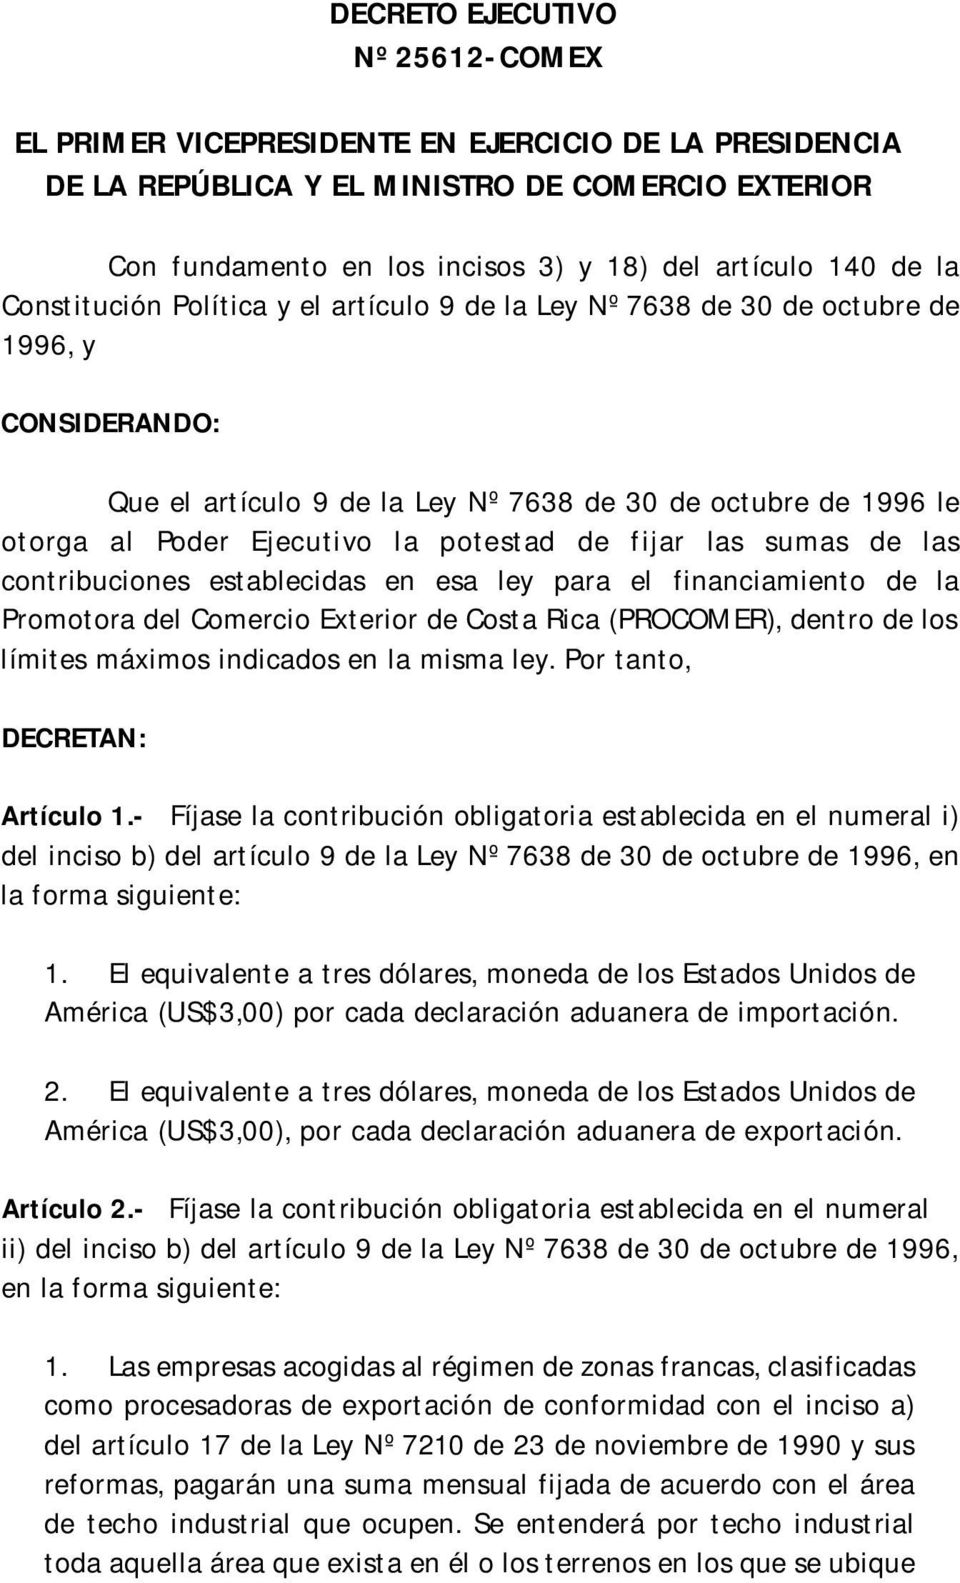 potestad de fijar las sumas de las contribuciones establecidas en esa ley para el financiamiento de la Promotora del Comercio Exterior de Costa Rica (PROCOMER), dentro de los límites máximos